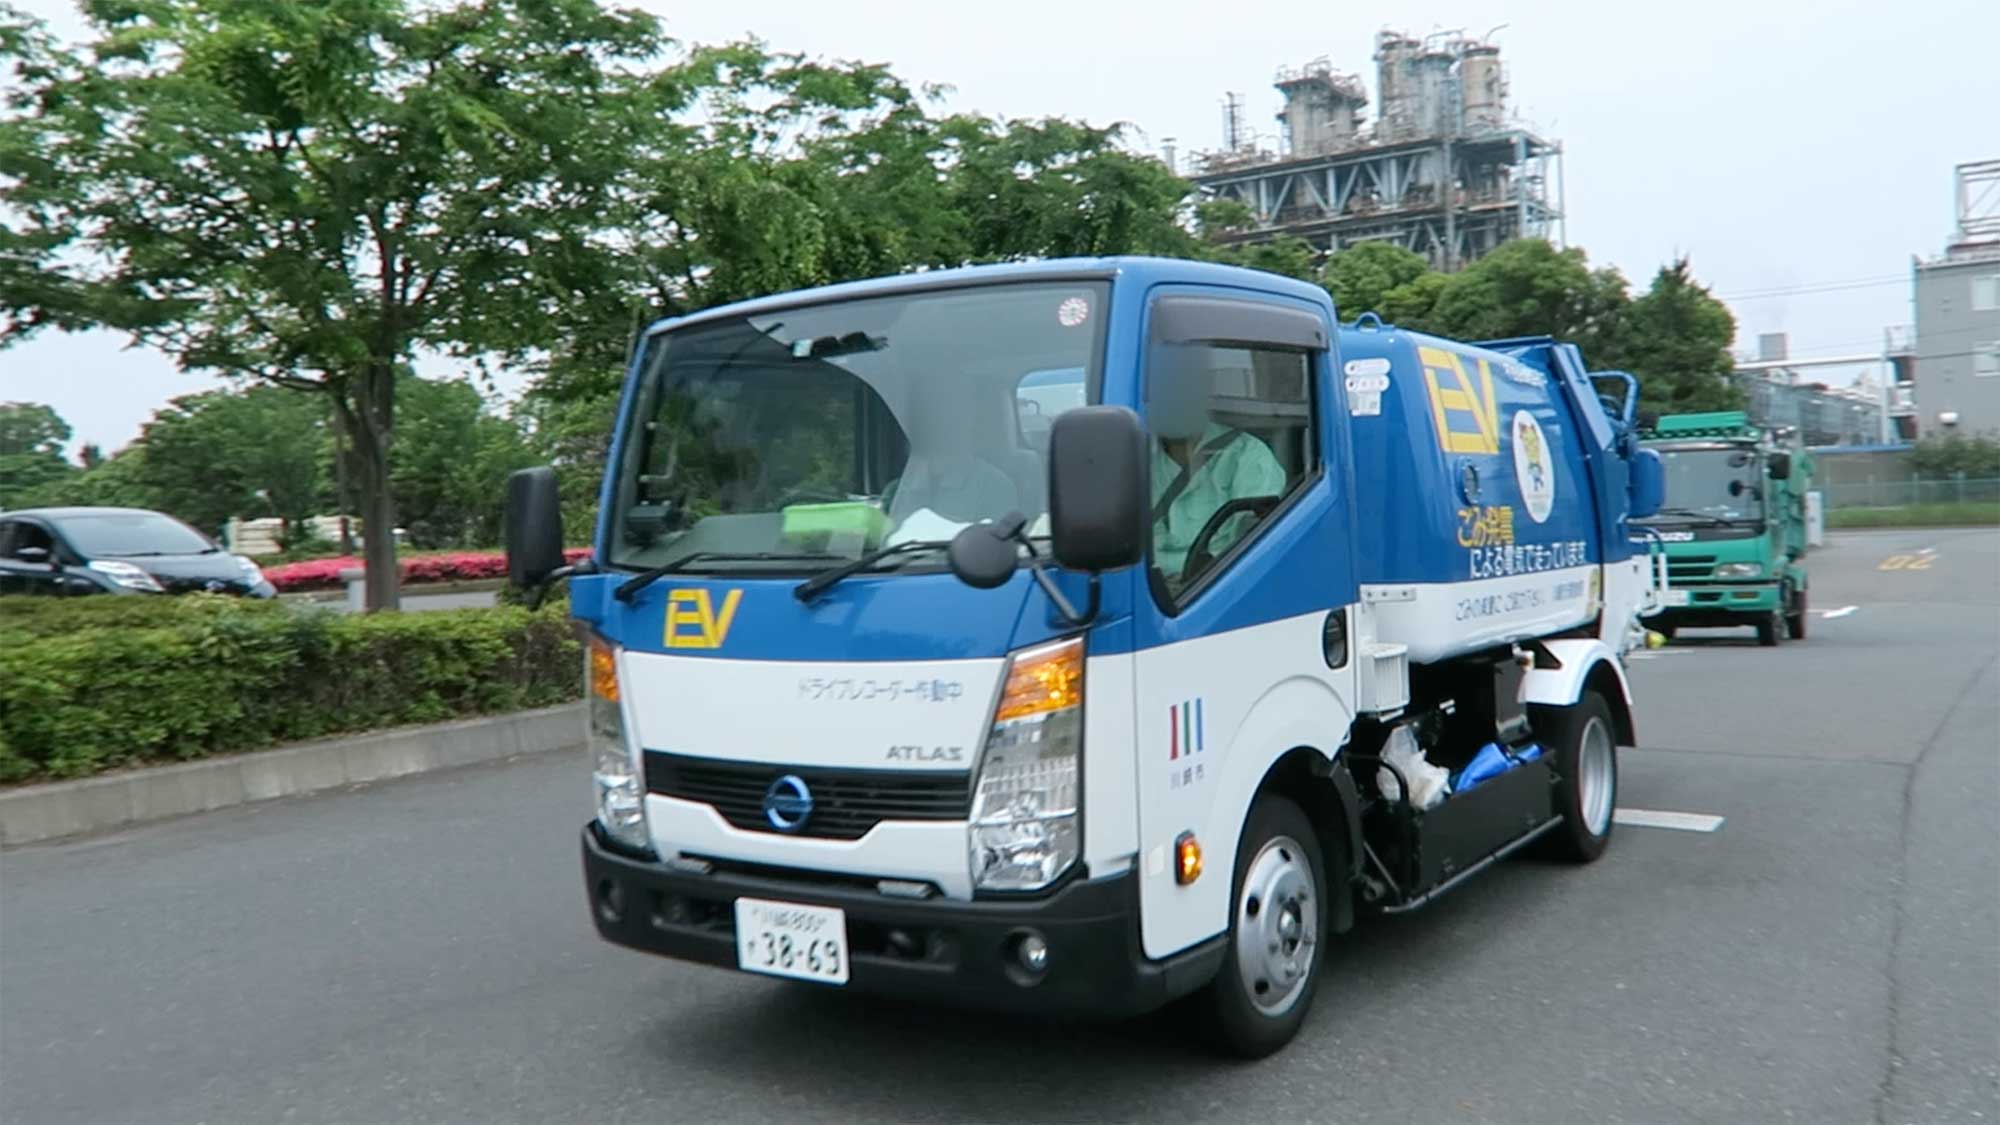 川崎市で活躍するevゴミ収集車のバッテリー交換シーンを見てみたい Evsmartブログ